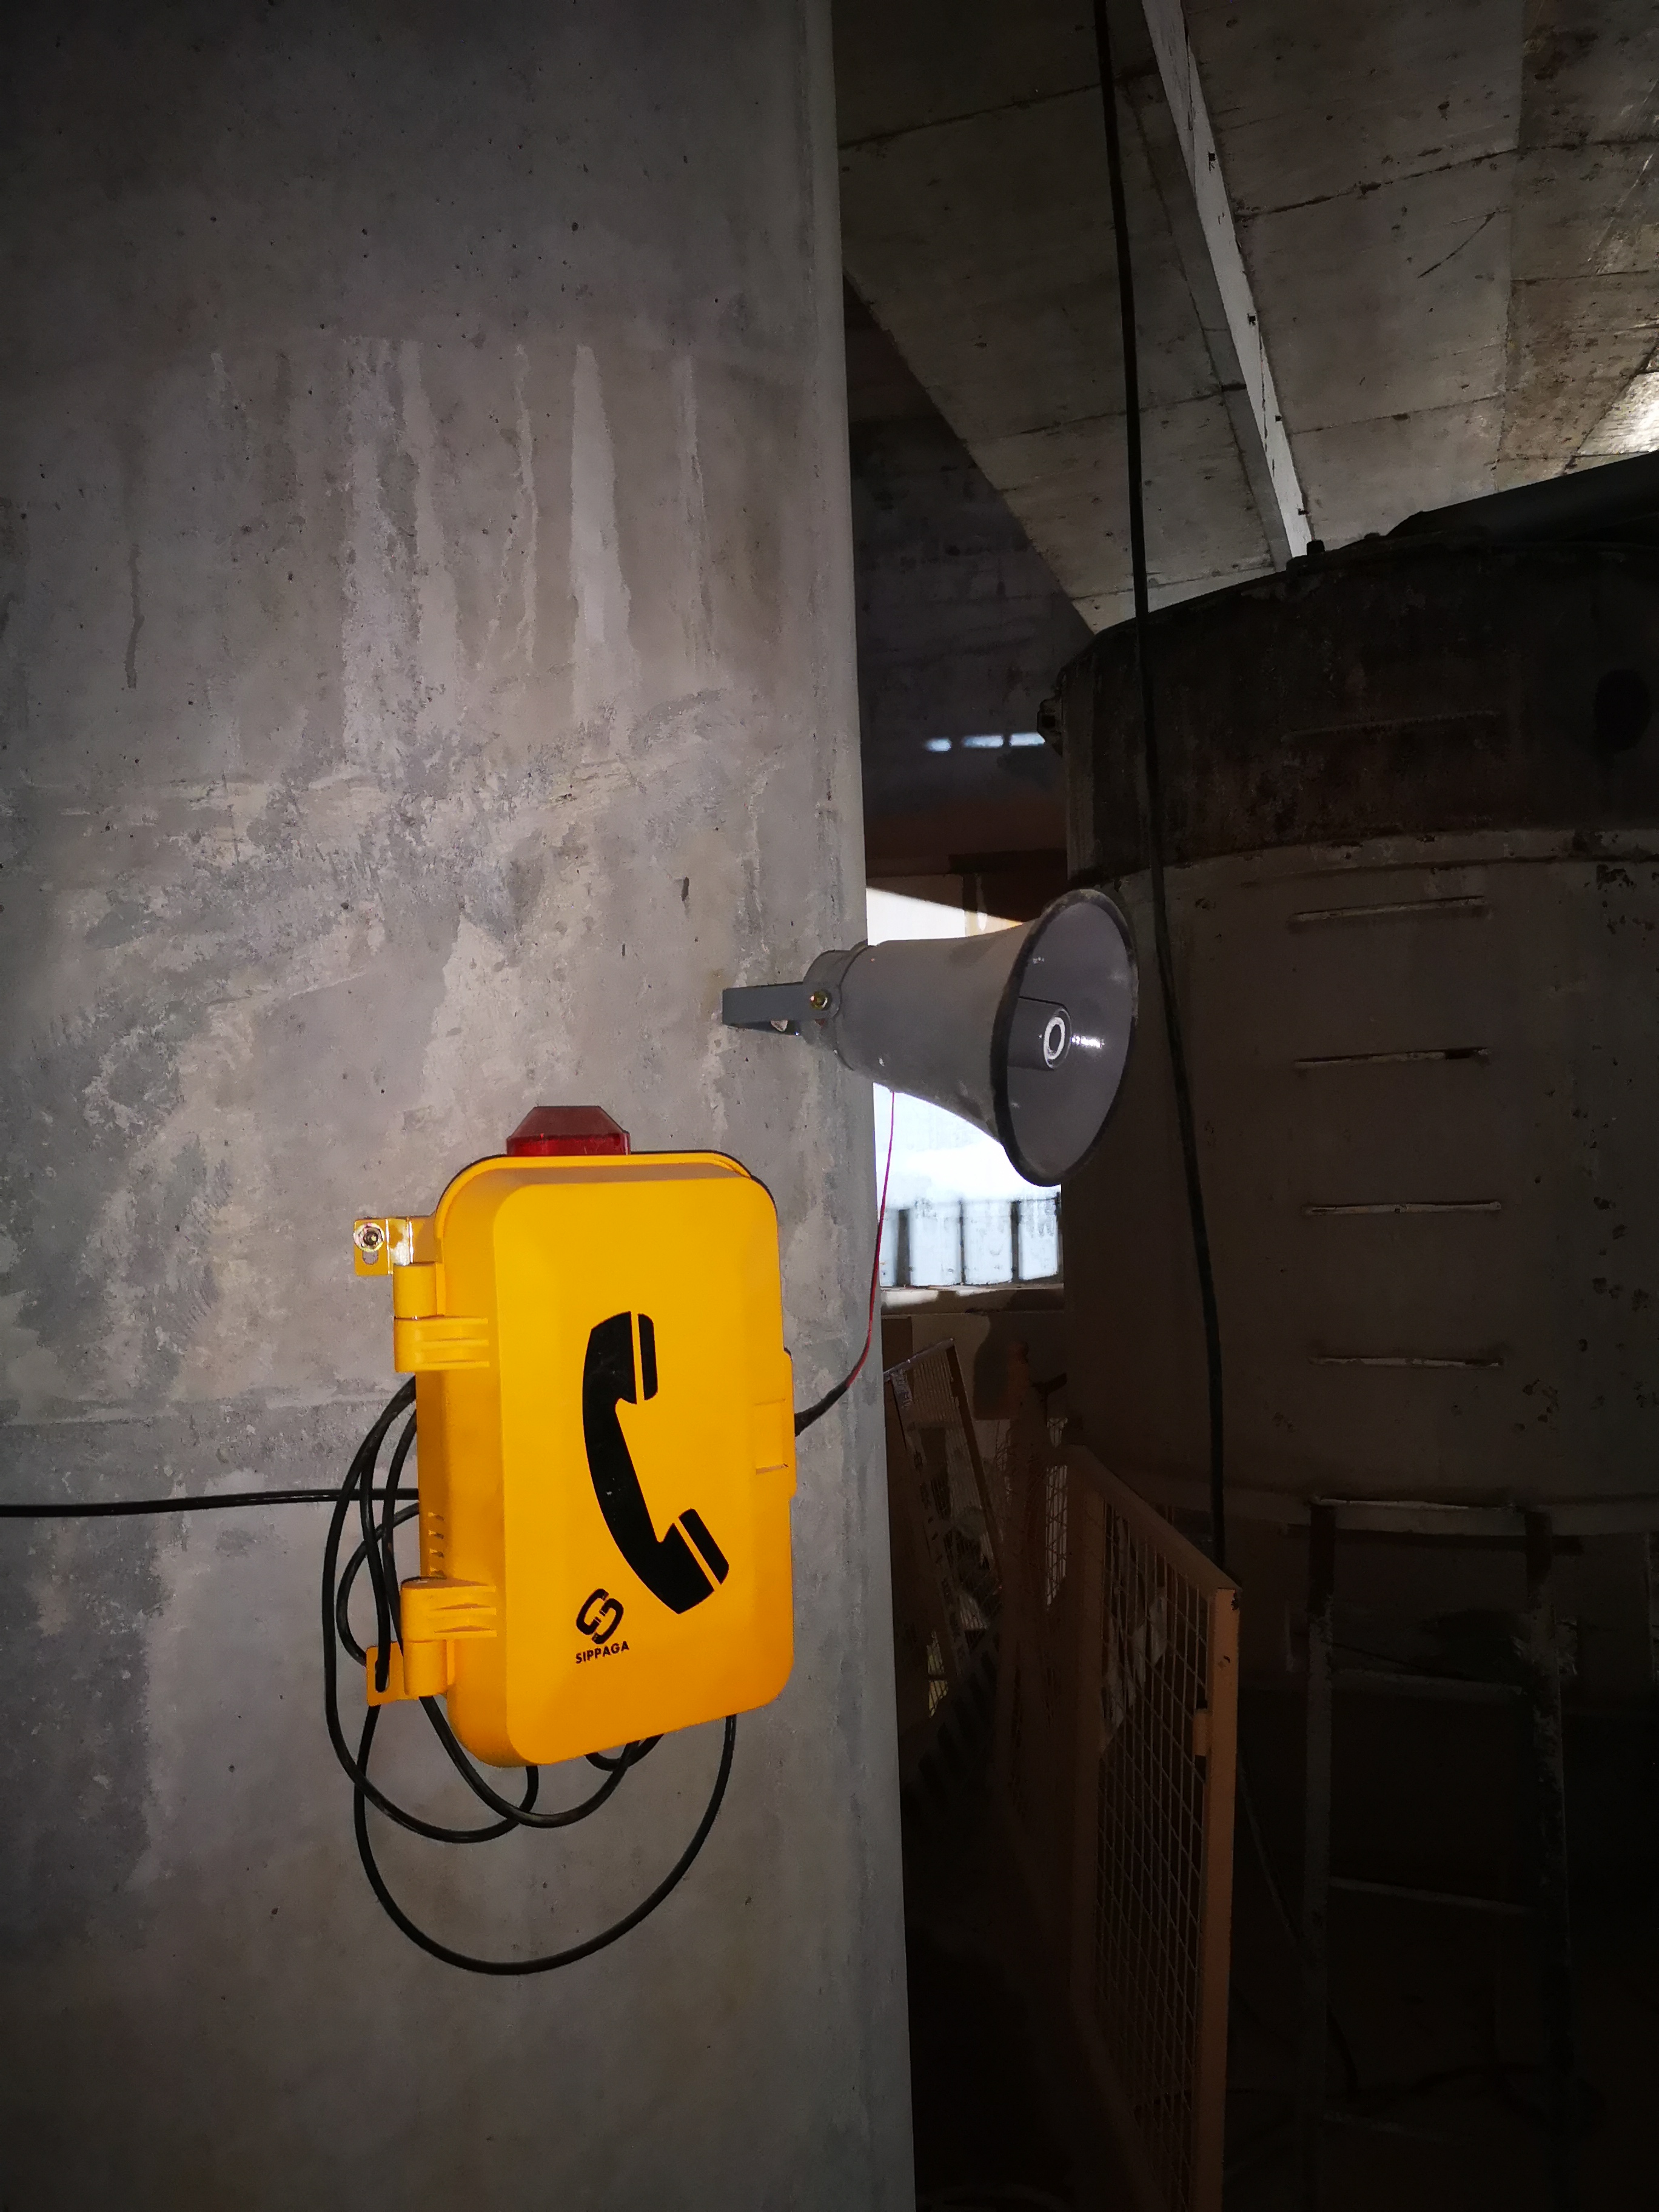 土建施工高噪音潮湿环境通讯方案 防水型工业抗噪扩音广播对讲系统